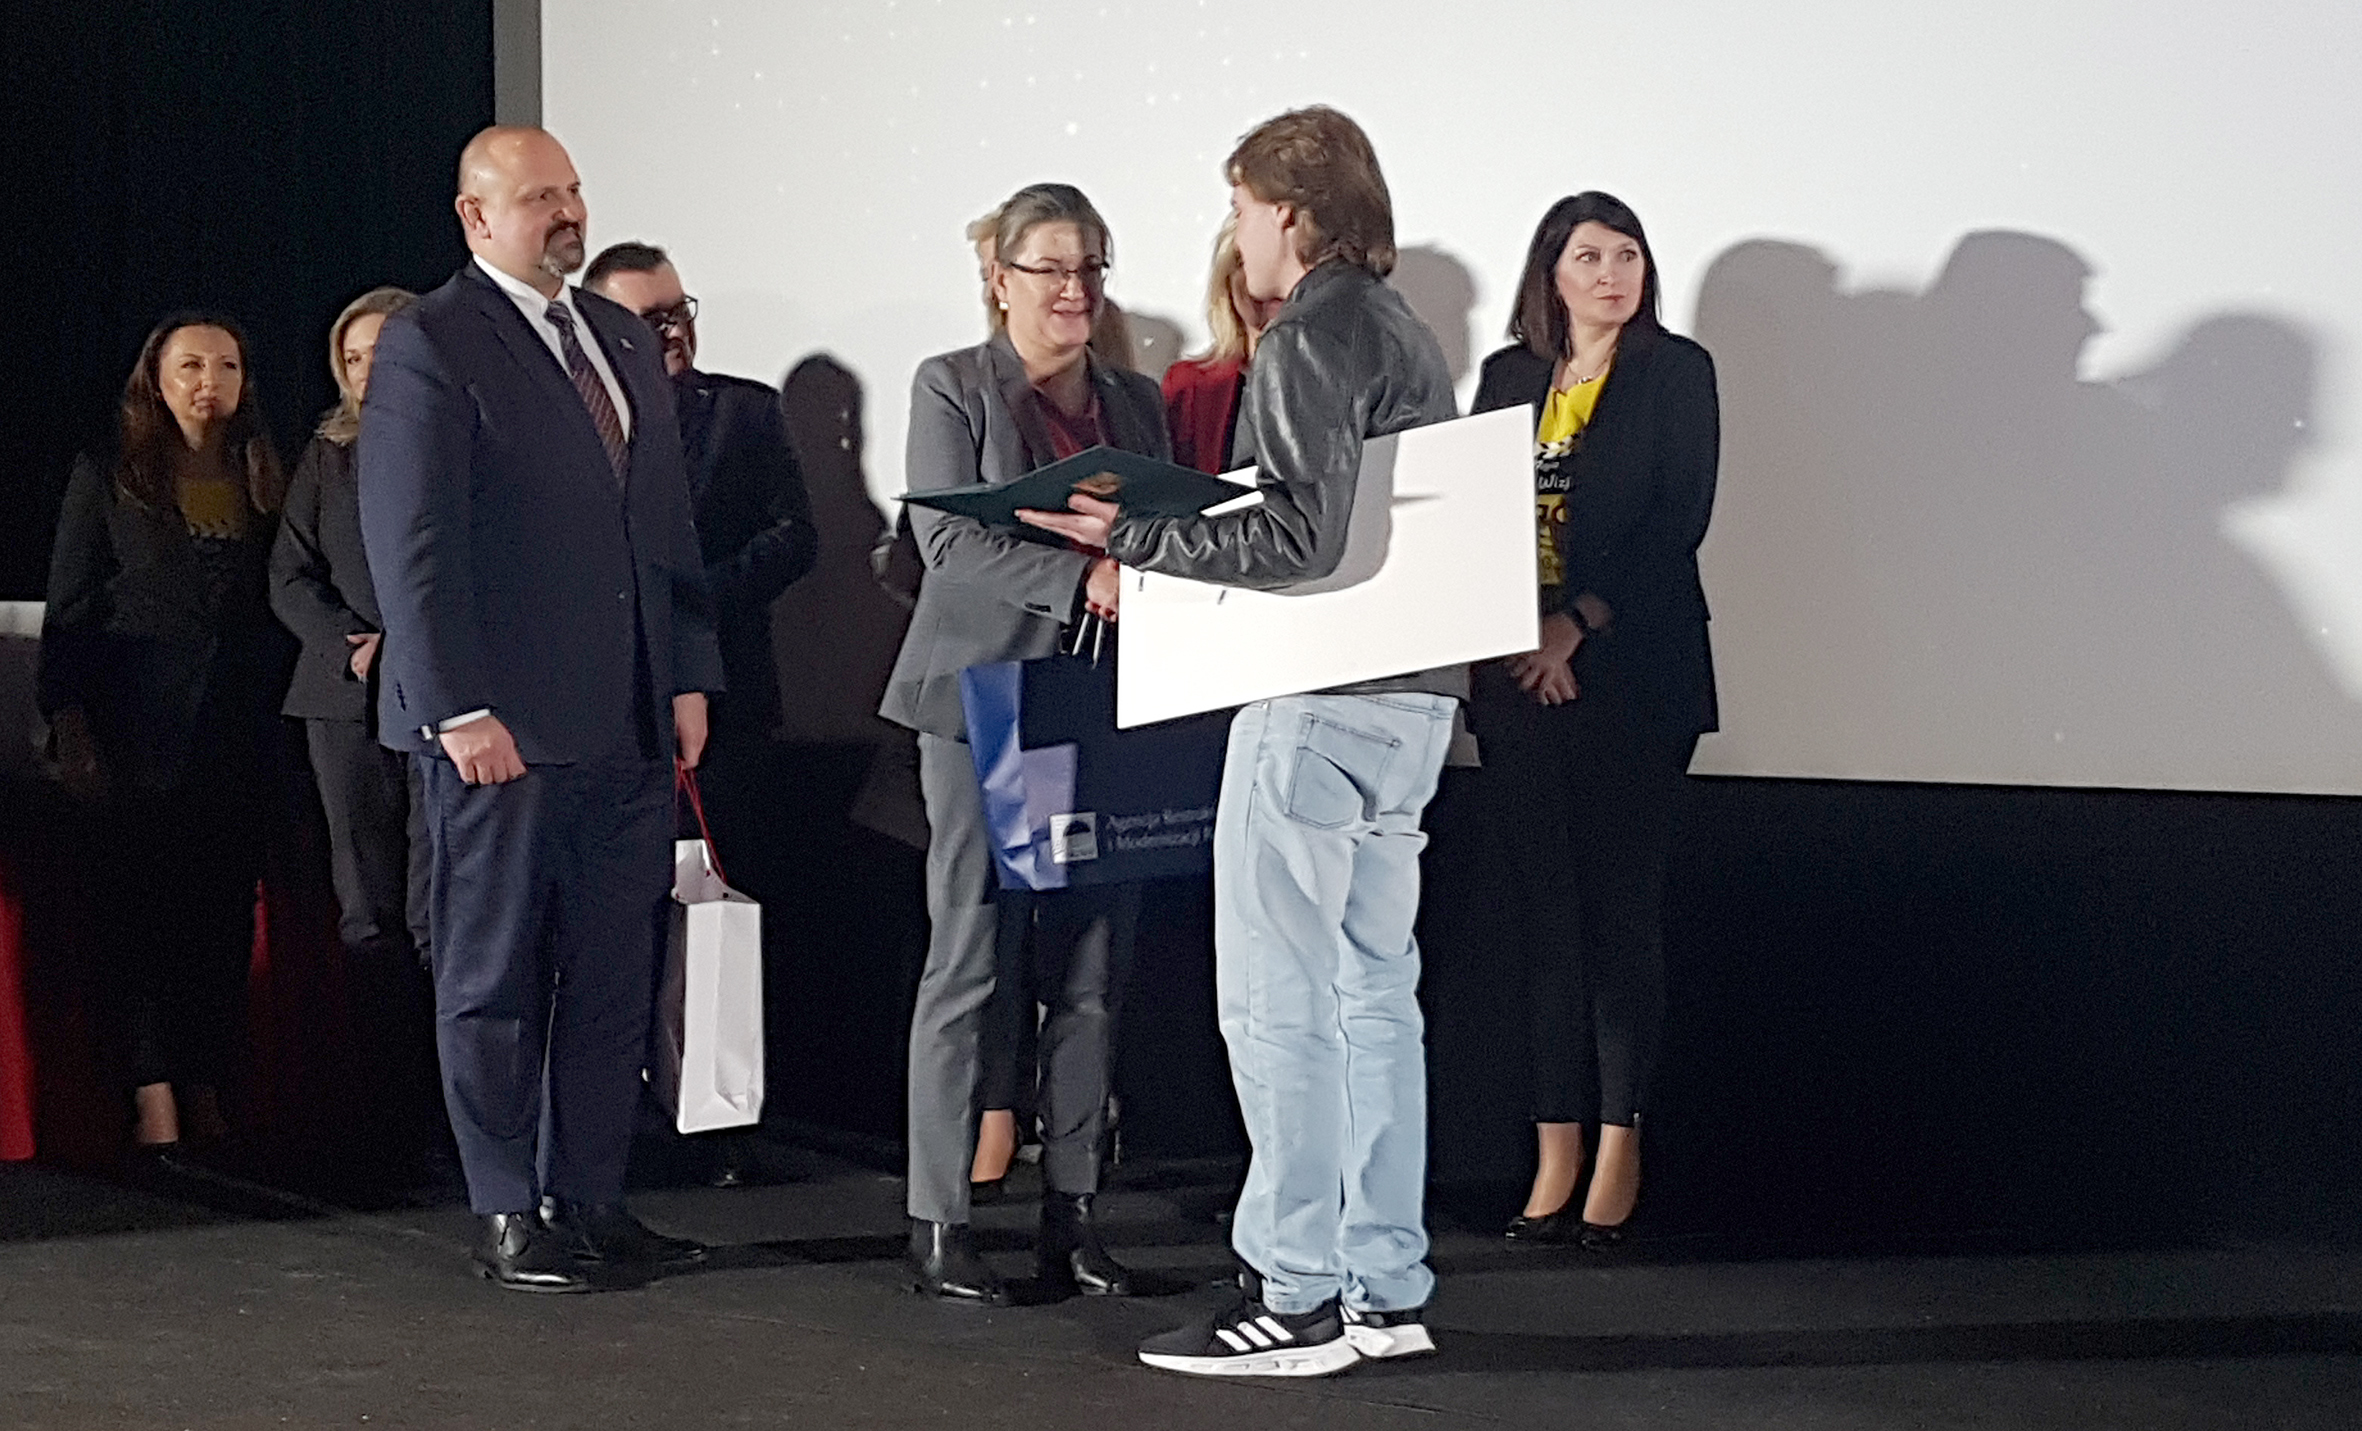 Nagrodę od ARiMR za zajęcie 3. miejsca wręcza Jakubowi Banachowi Wioletta Sitańska, zastępca dyrektora Biura Prasowego.